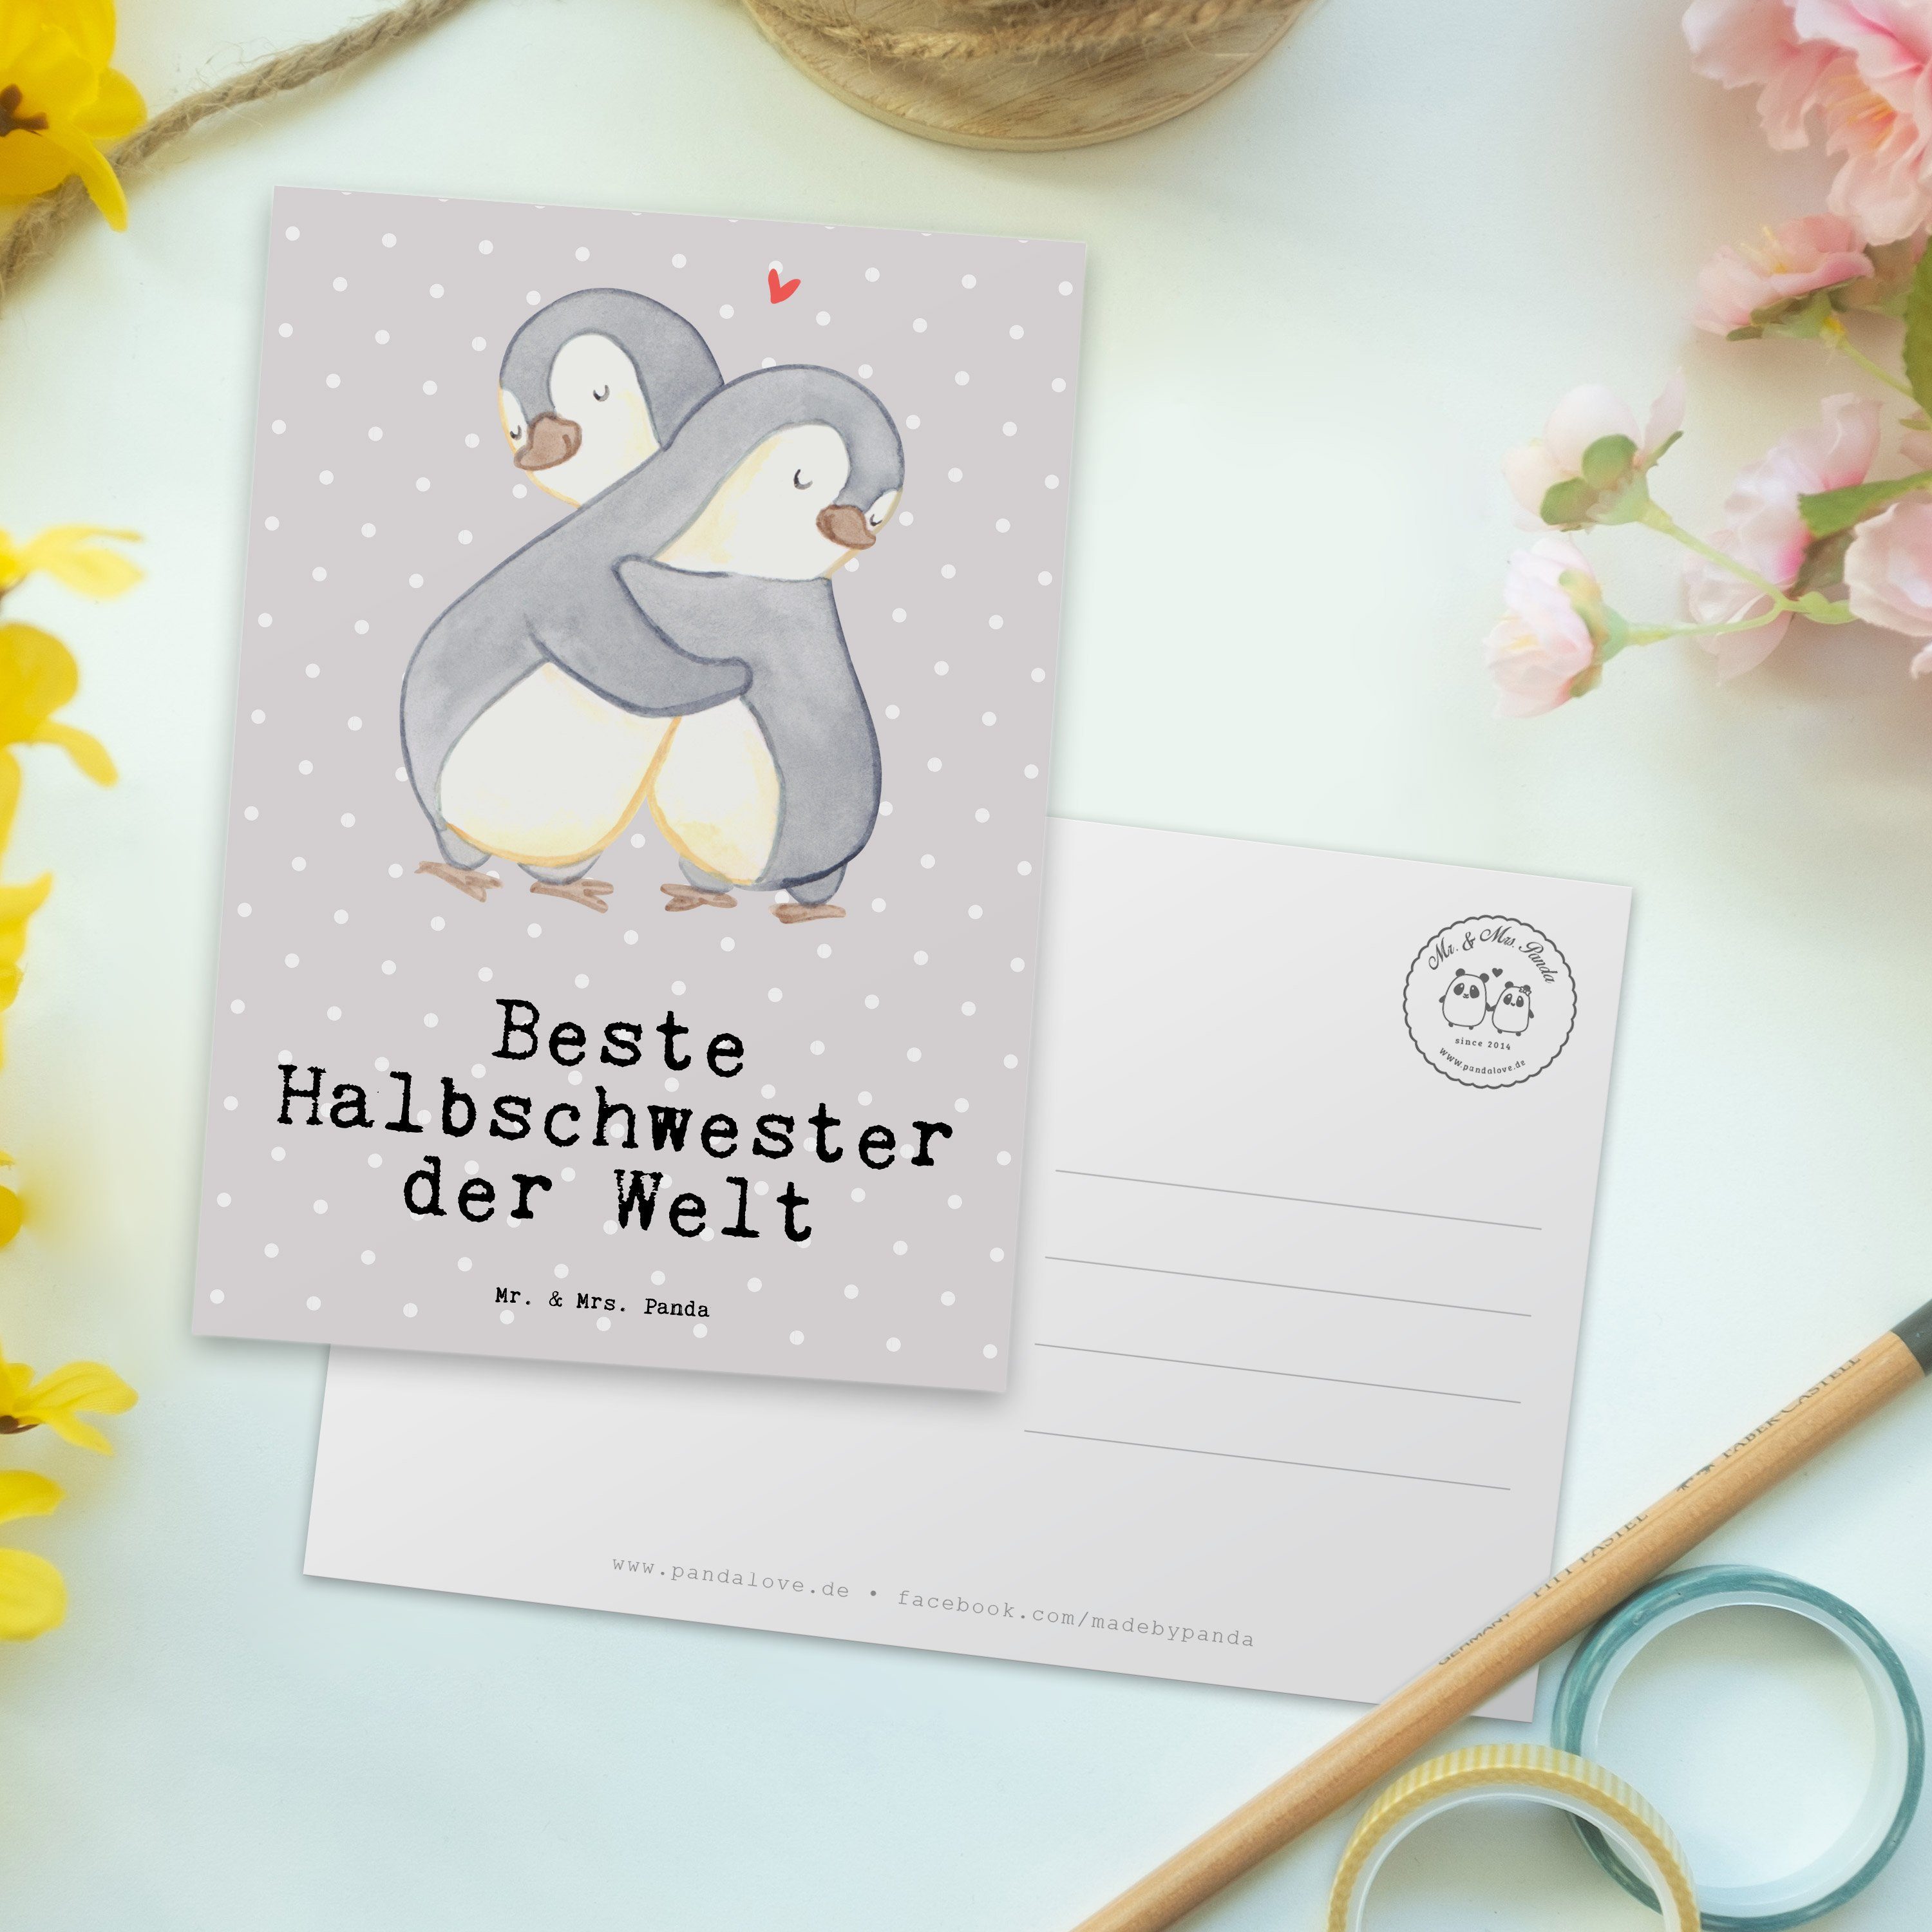 Mr. & Mrs. Panda Beste Pastell - der Pinguin Welt - Halbschwester Einla Postkarte Grau Geschenk